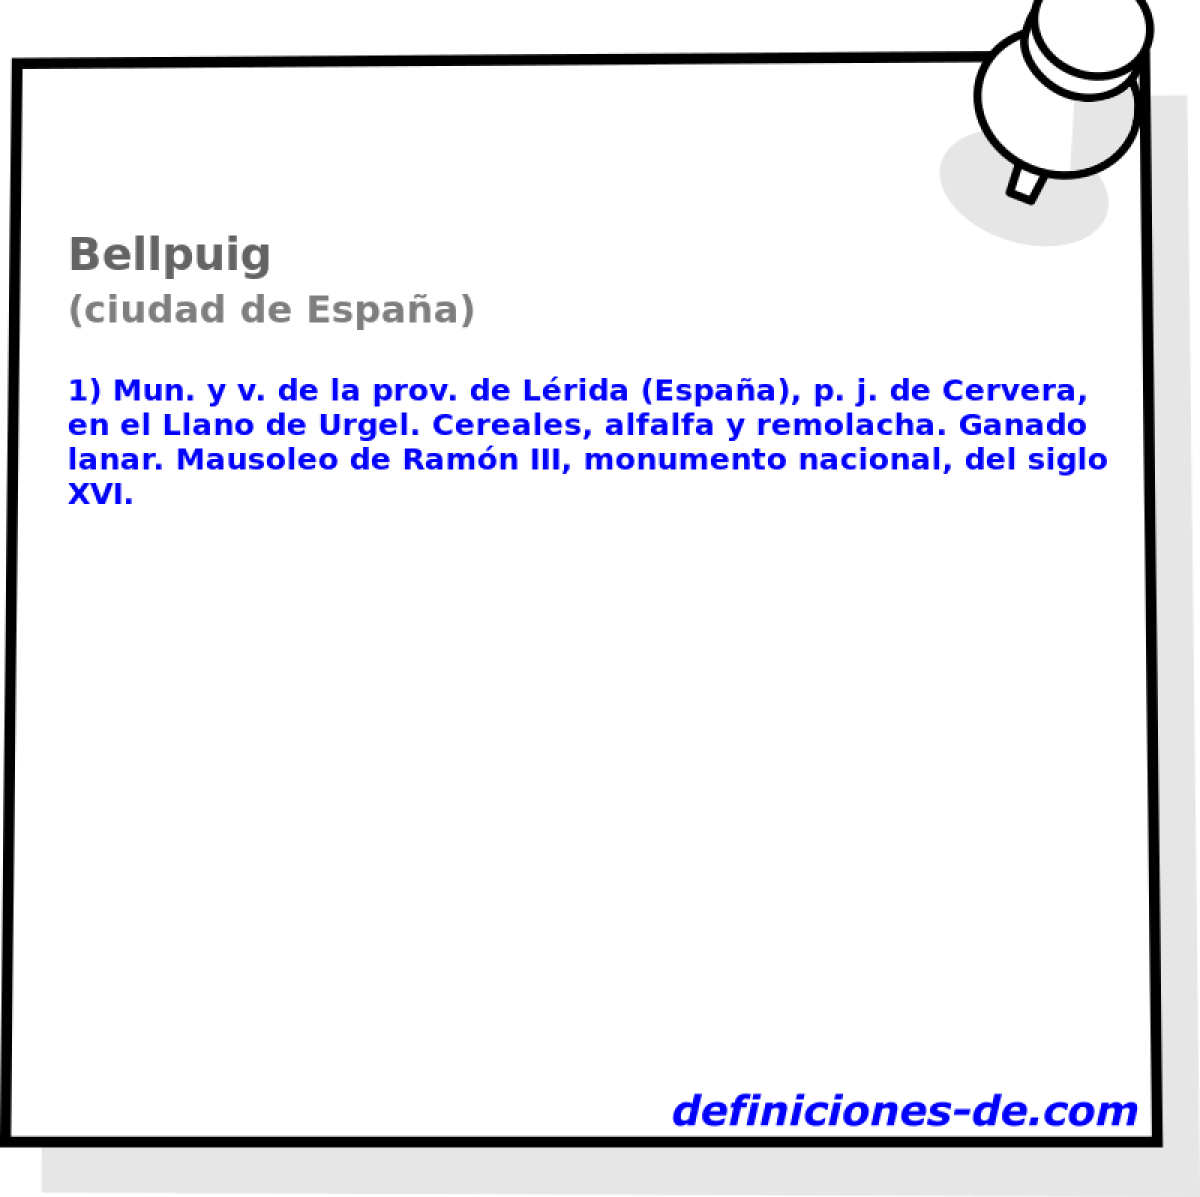 Bellpuig (ciudad de Espaa)